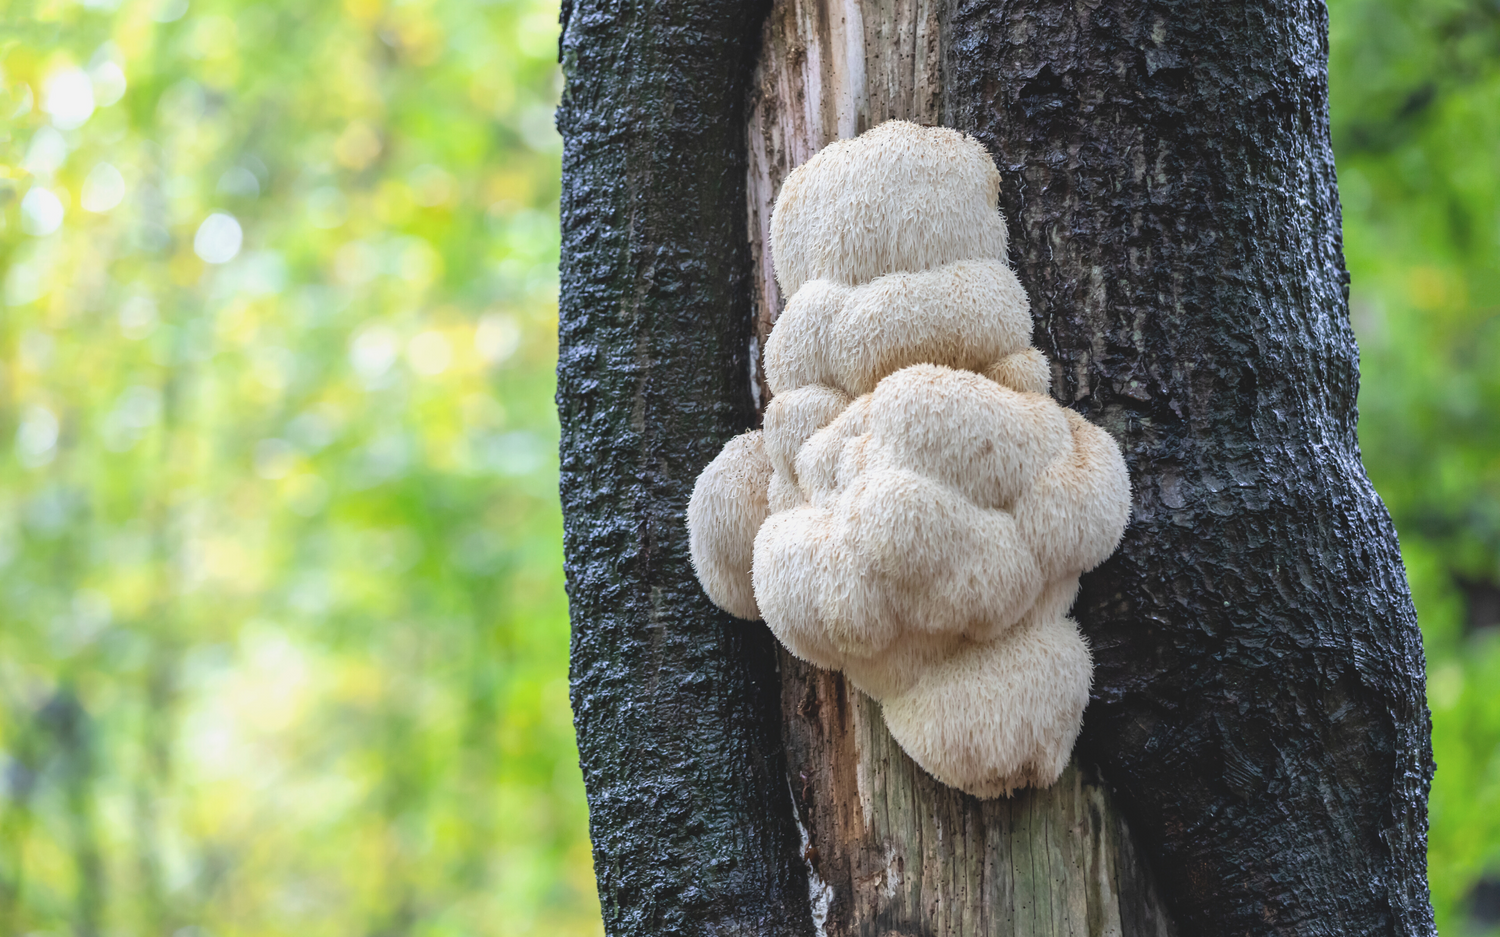 lion's mane mushroom found on tree